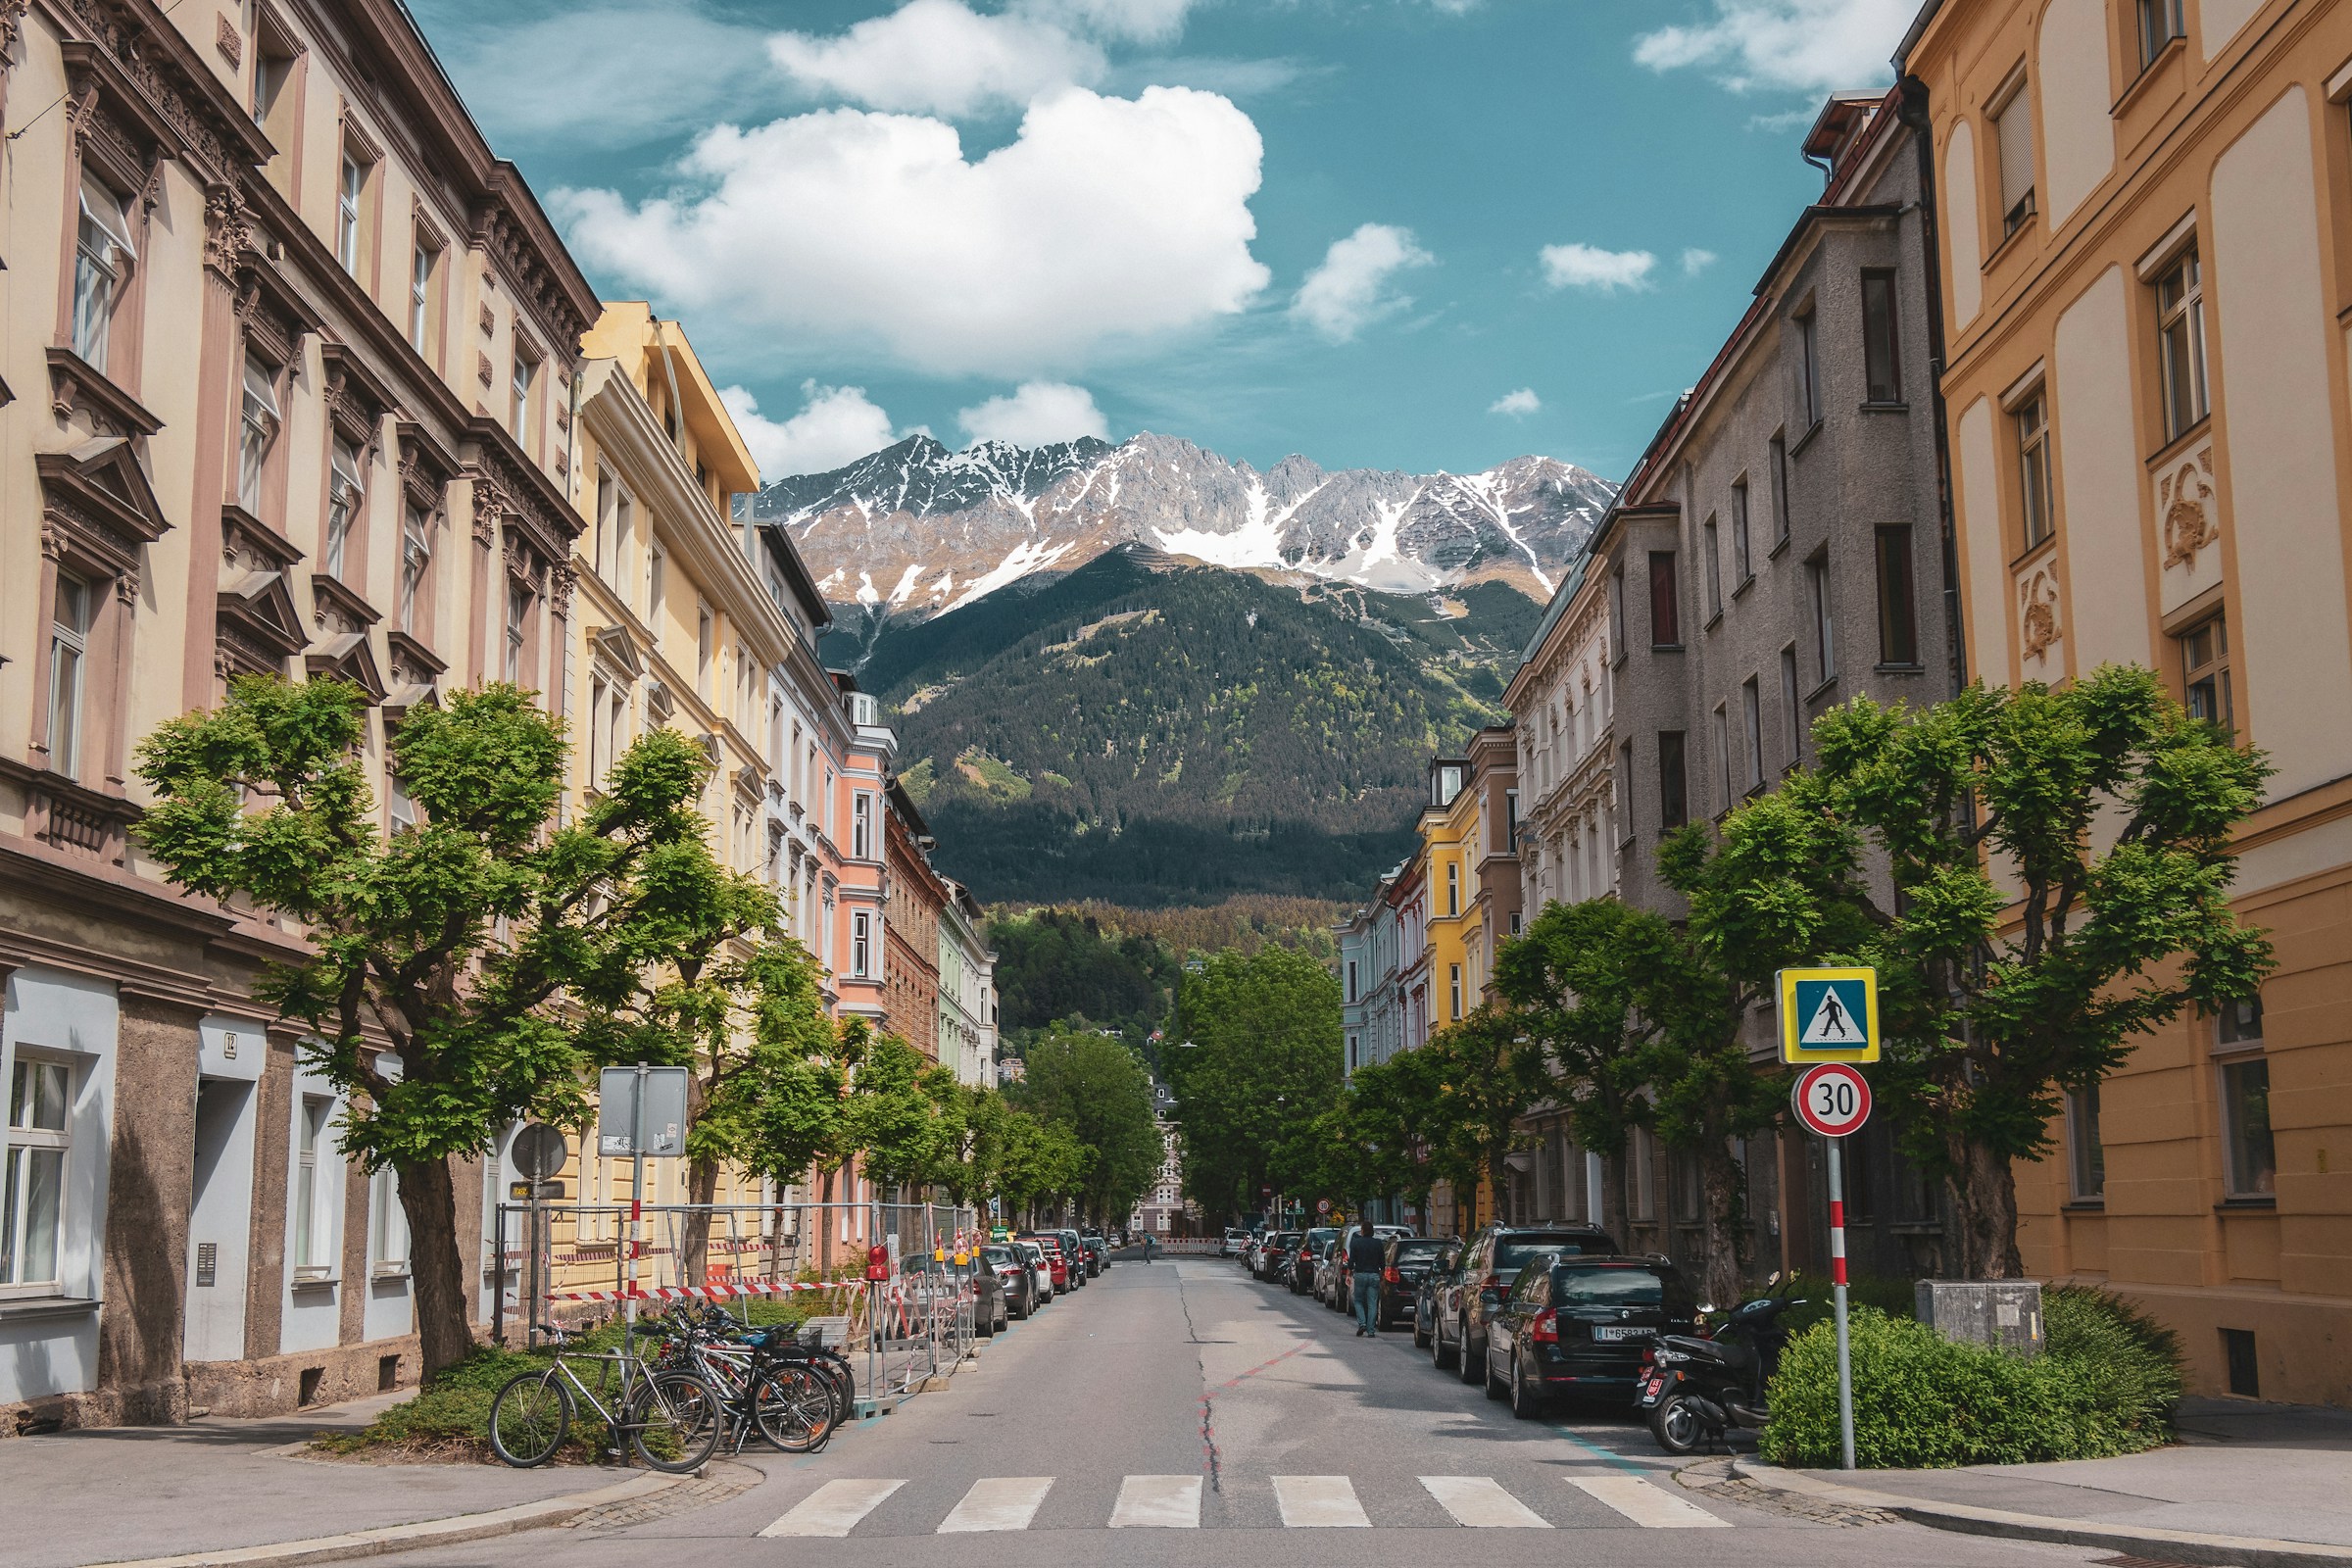 Gata i Innsbruck med snötäckta berg i bakgrunden och klassisk arkitektur.